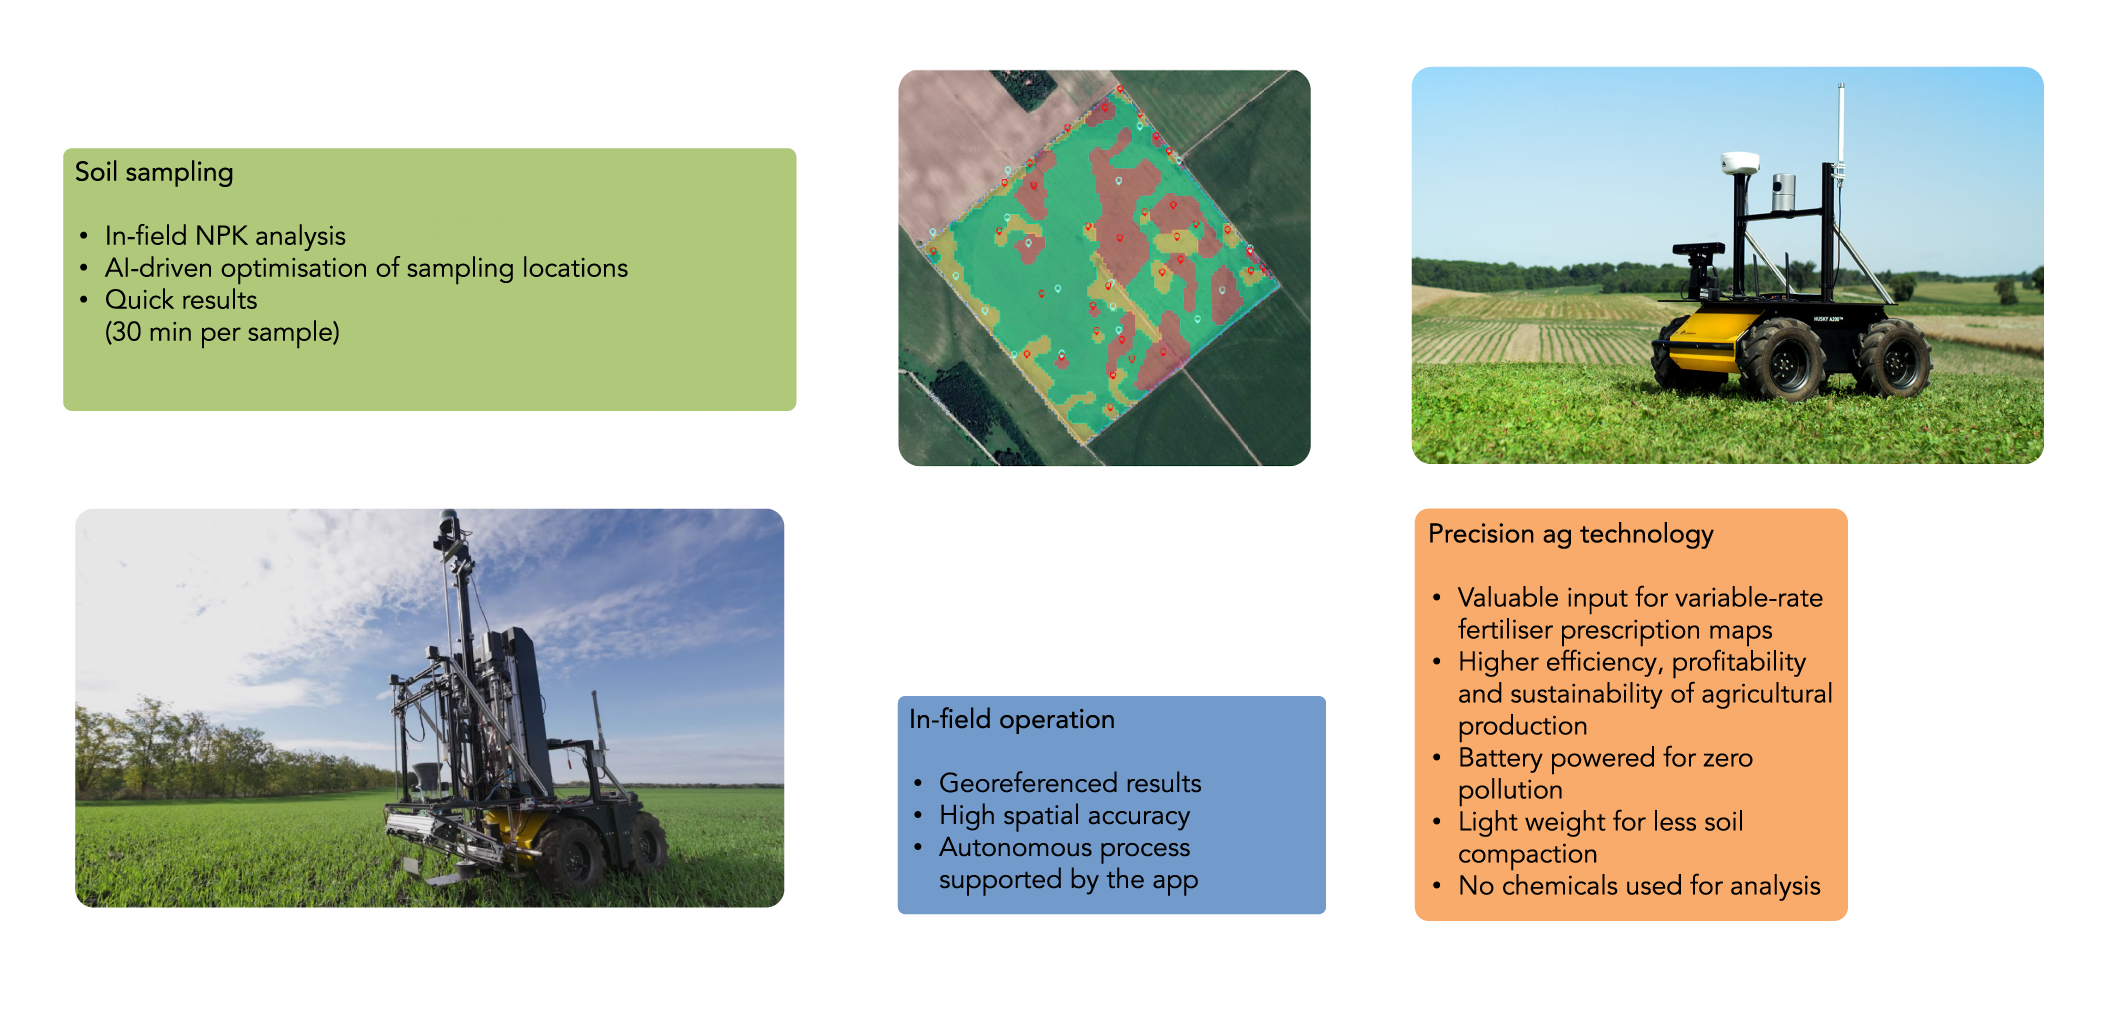 Agrobot for in-field soil analysis